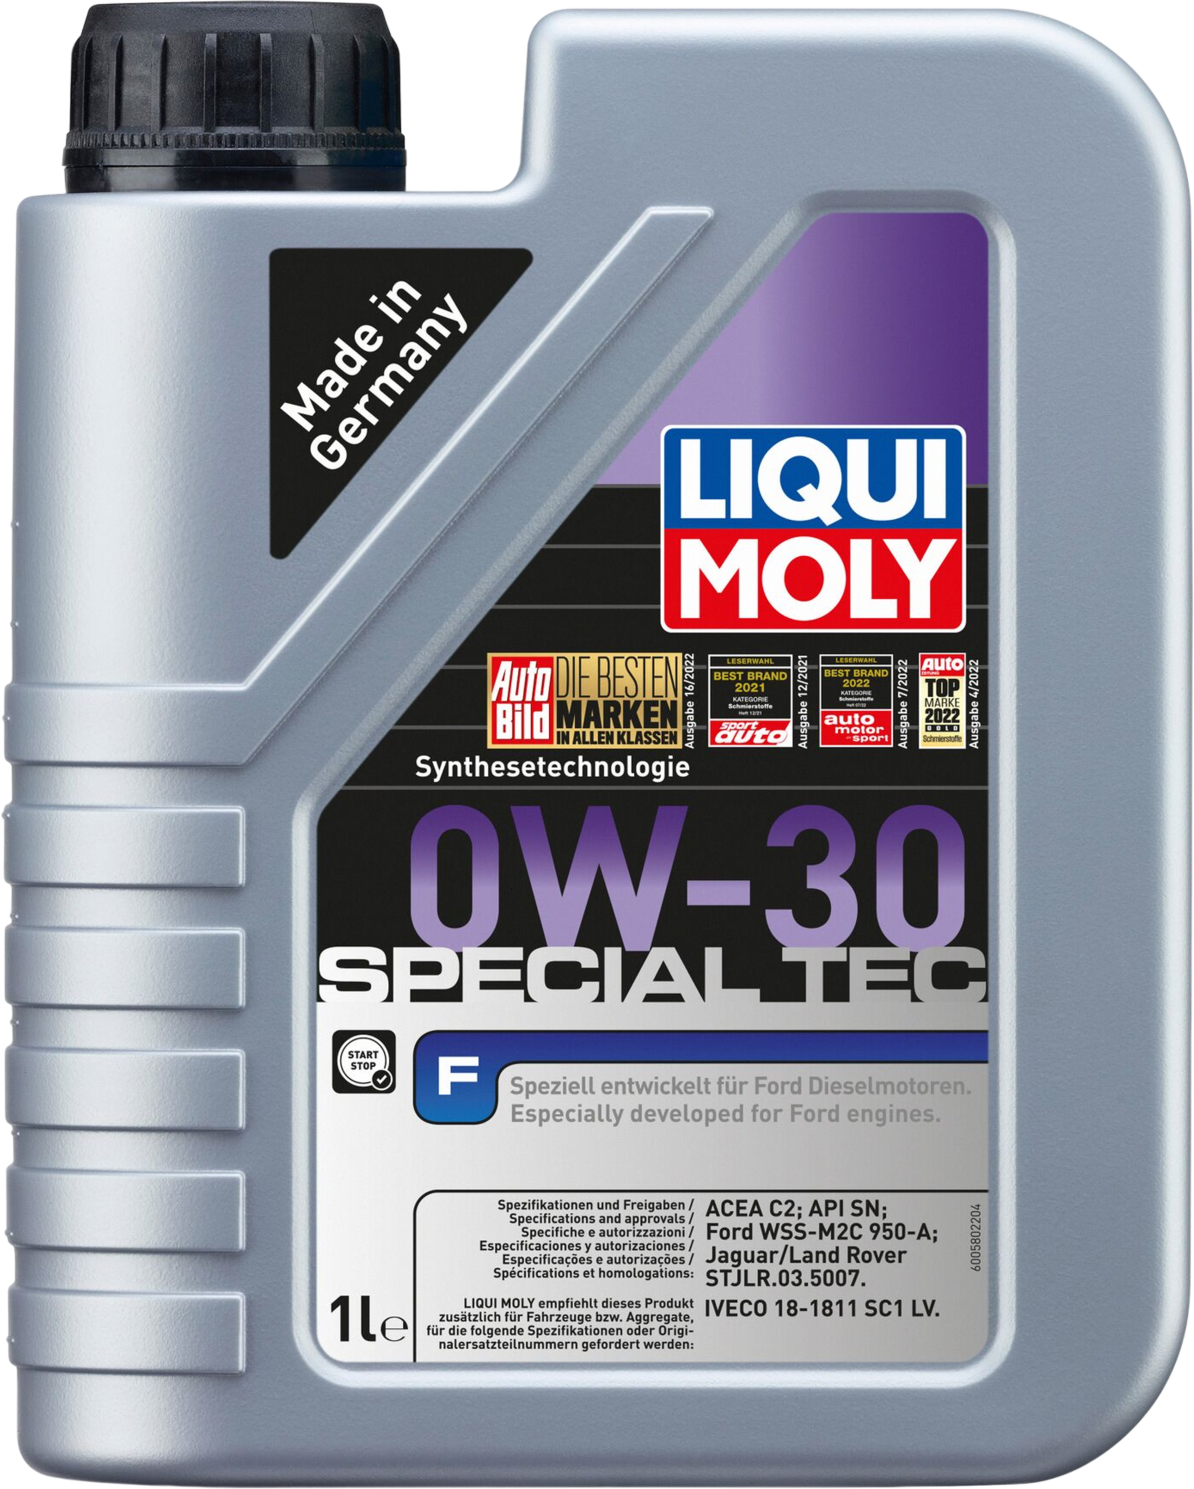 Liqui Moly Special Tec F 0W-30, 1 lt